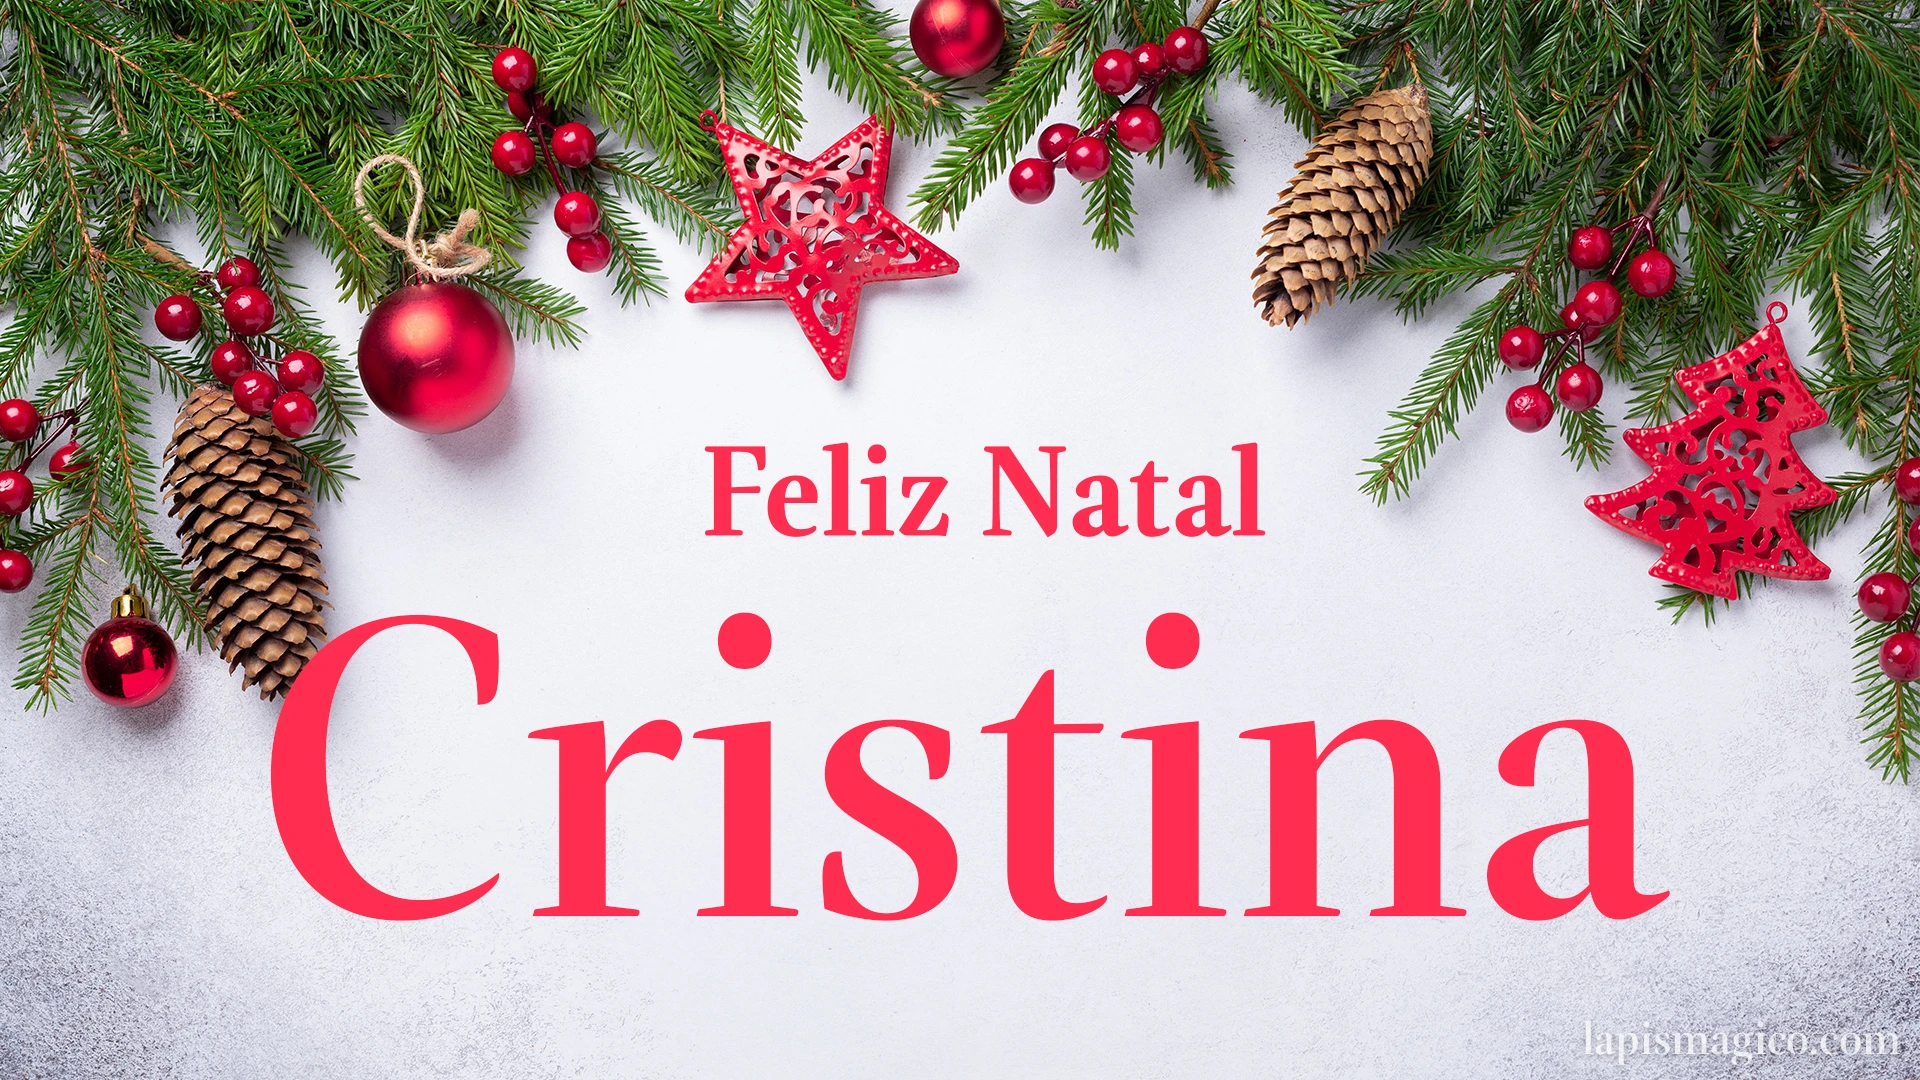 Oh Cristina, cinco postais de Feliz Natal Postal com o teu nome